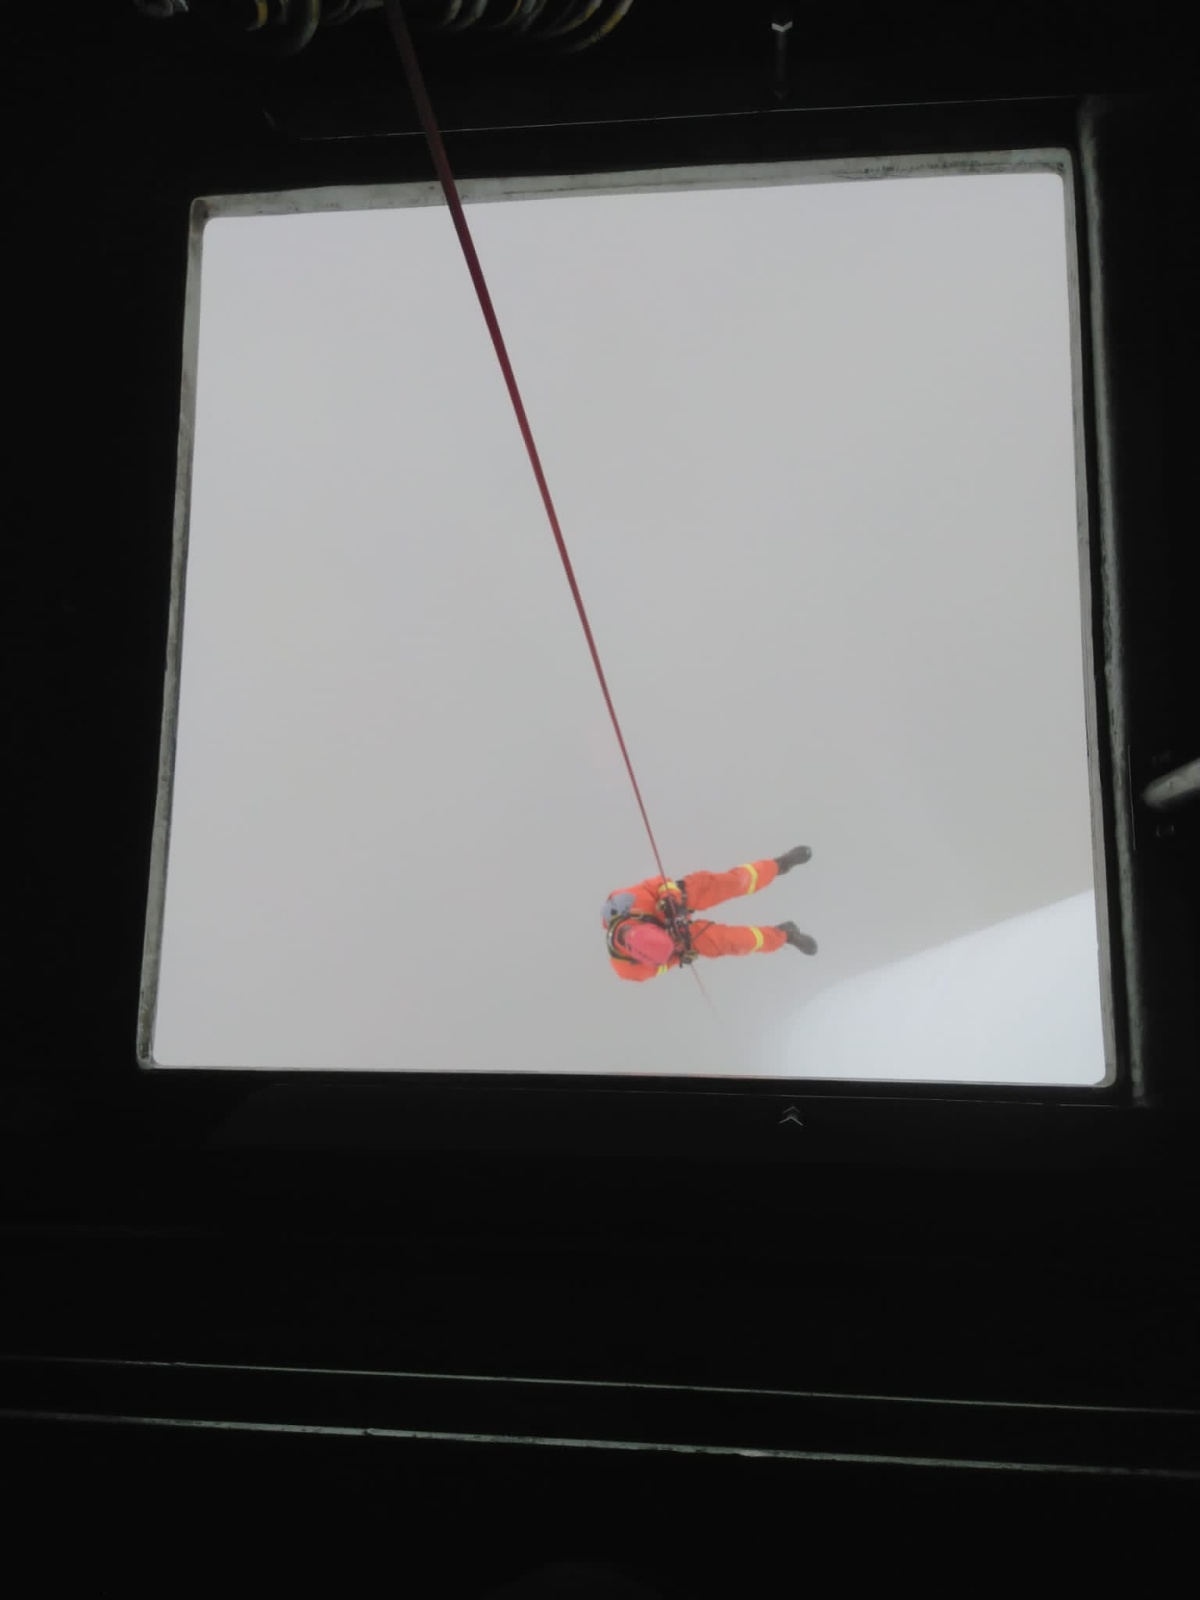 014-Výcvik lezců větrná elektrárna Pchery (1).jpeg